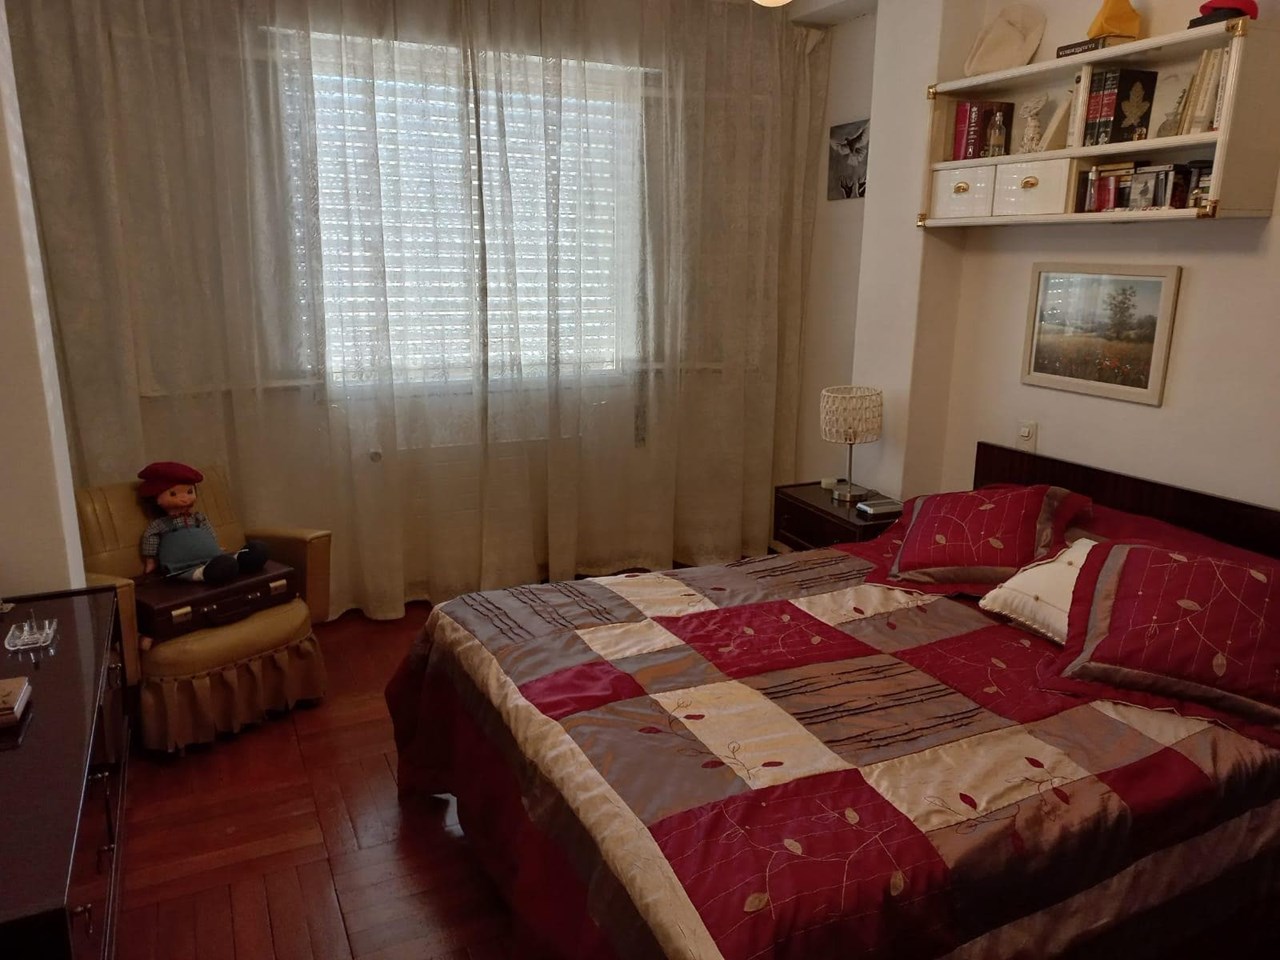 Foto 11 Coruña, 4 dormitorios + 1 dormitorio, despacho, 2 baños + aseo